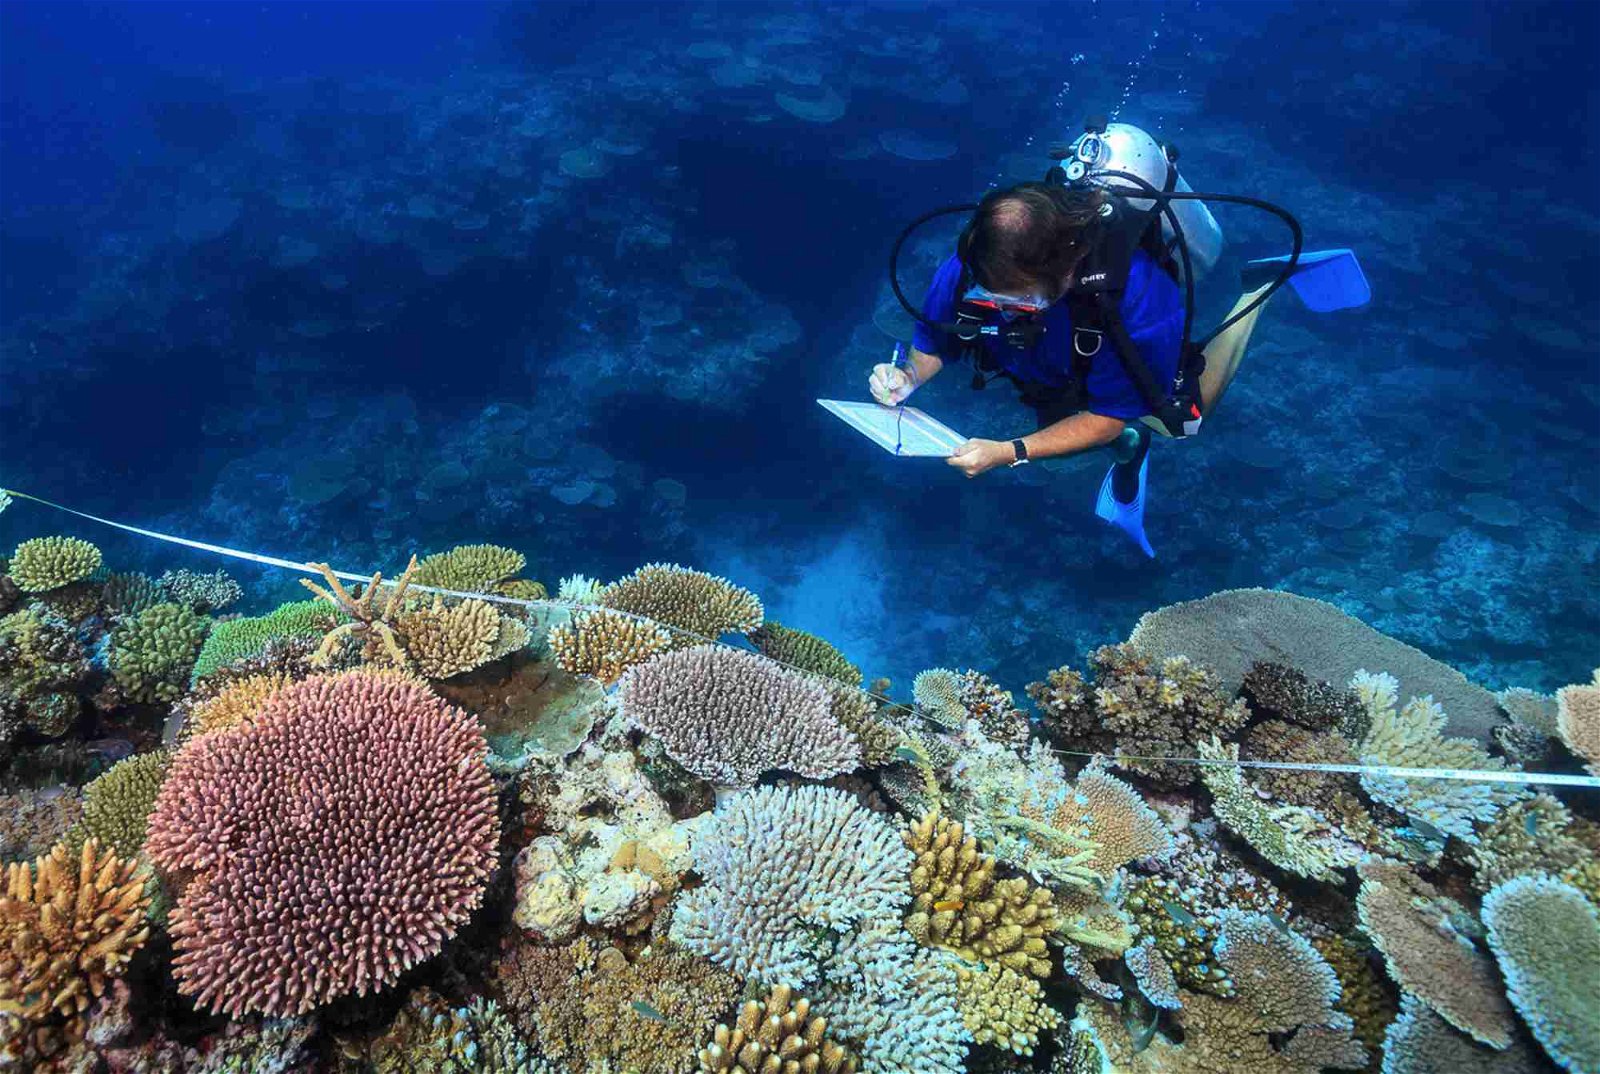 大堡礁珊瑚